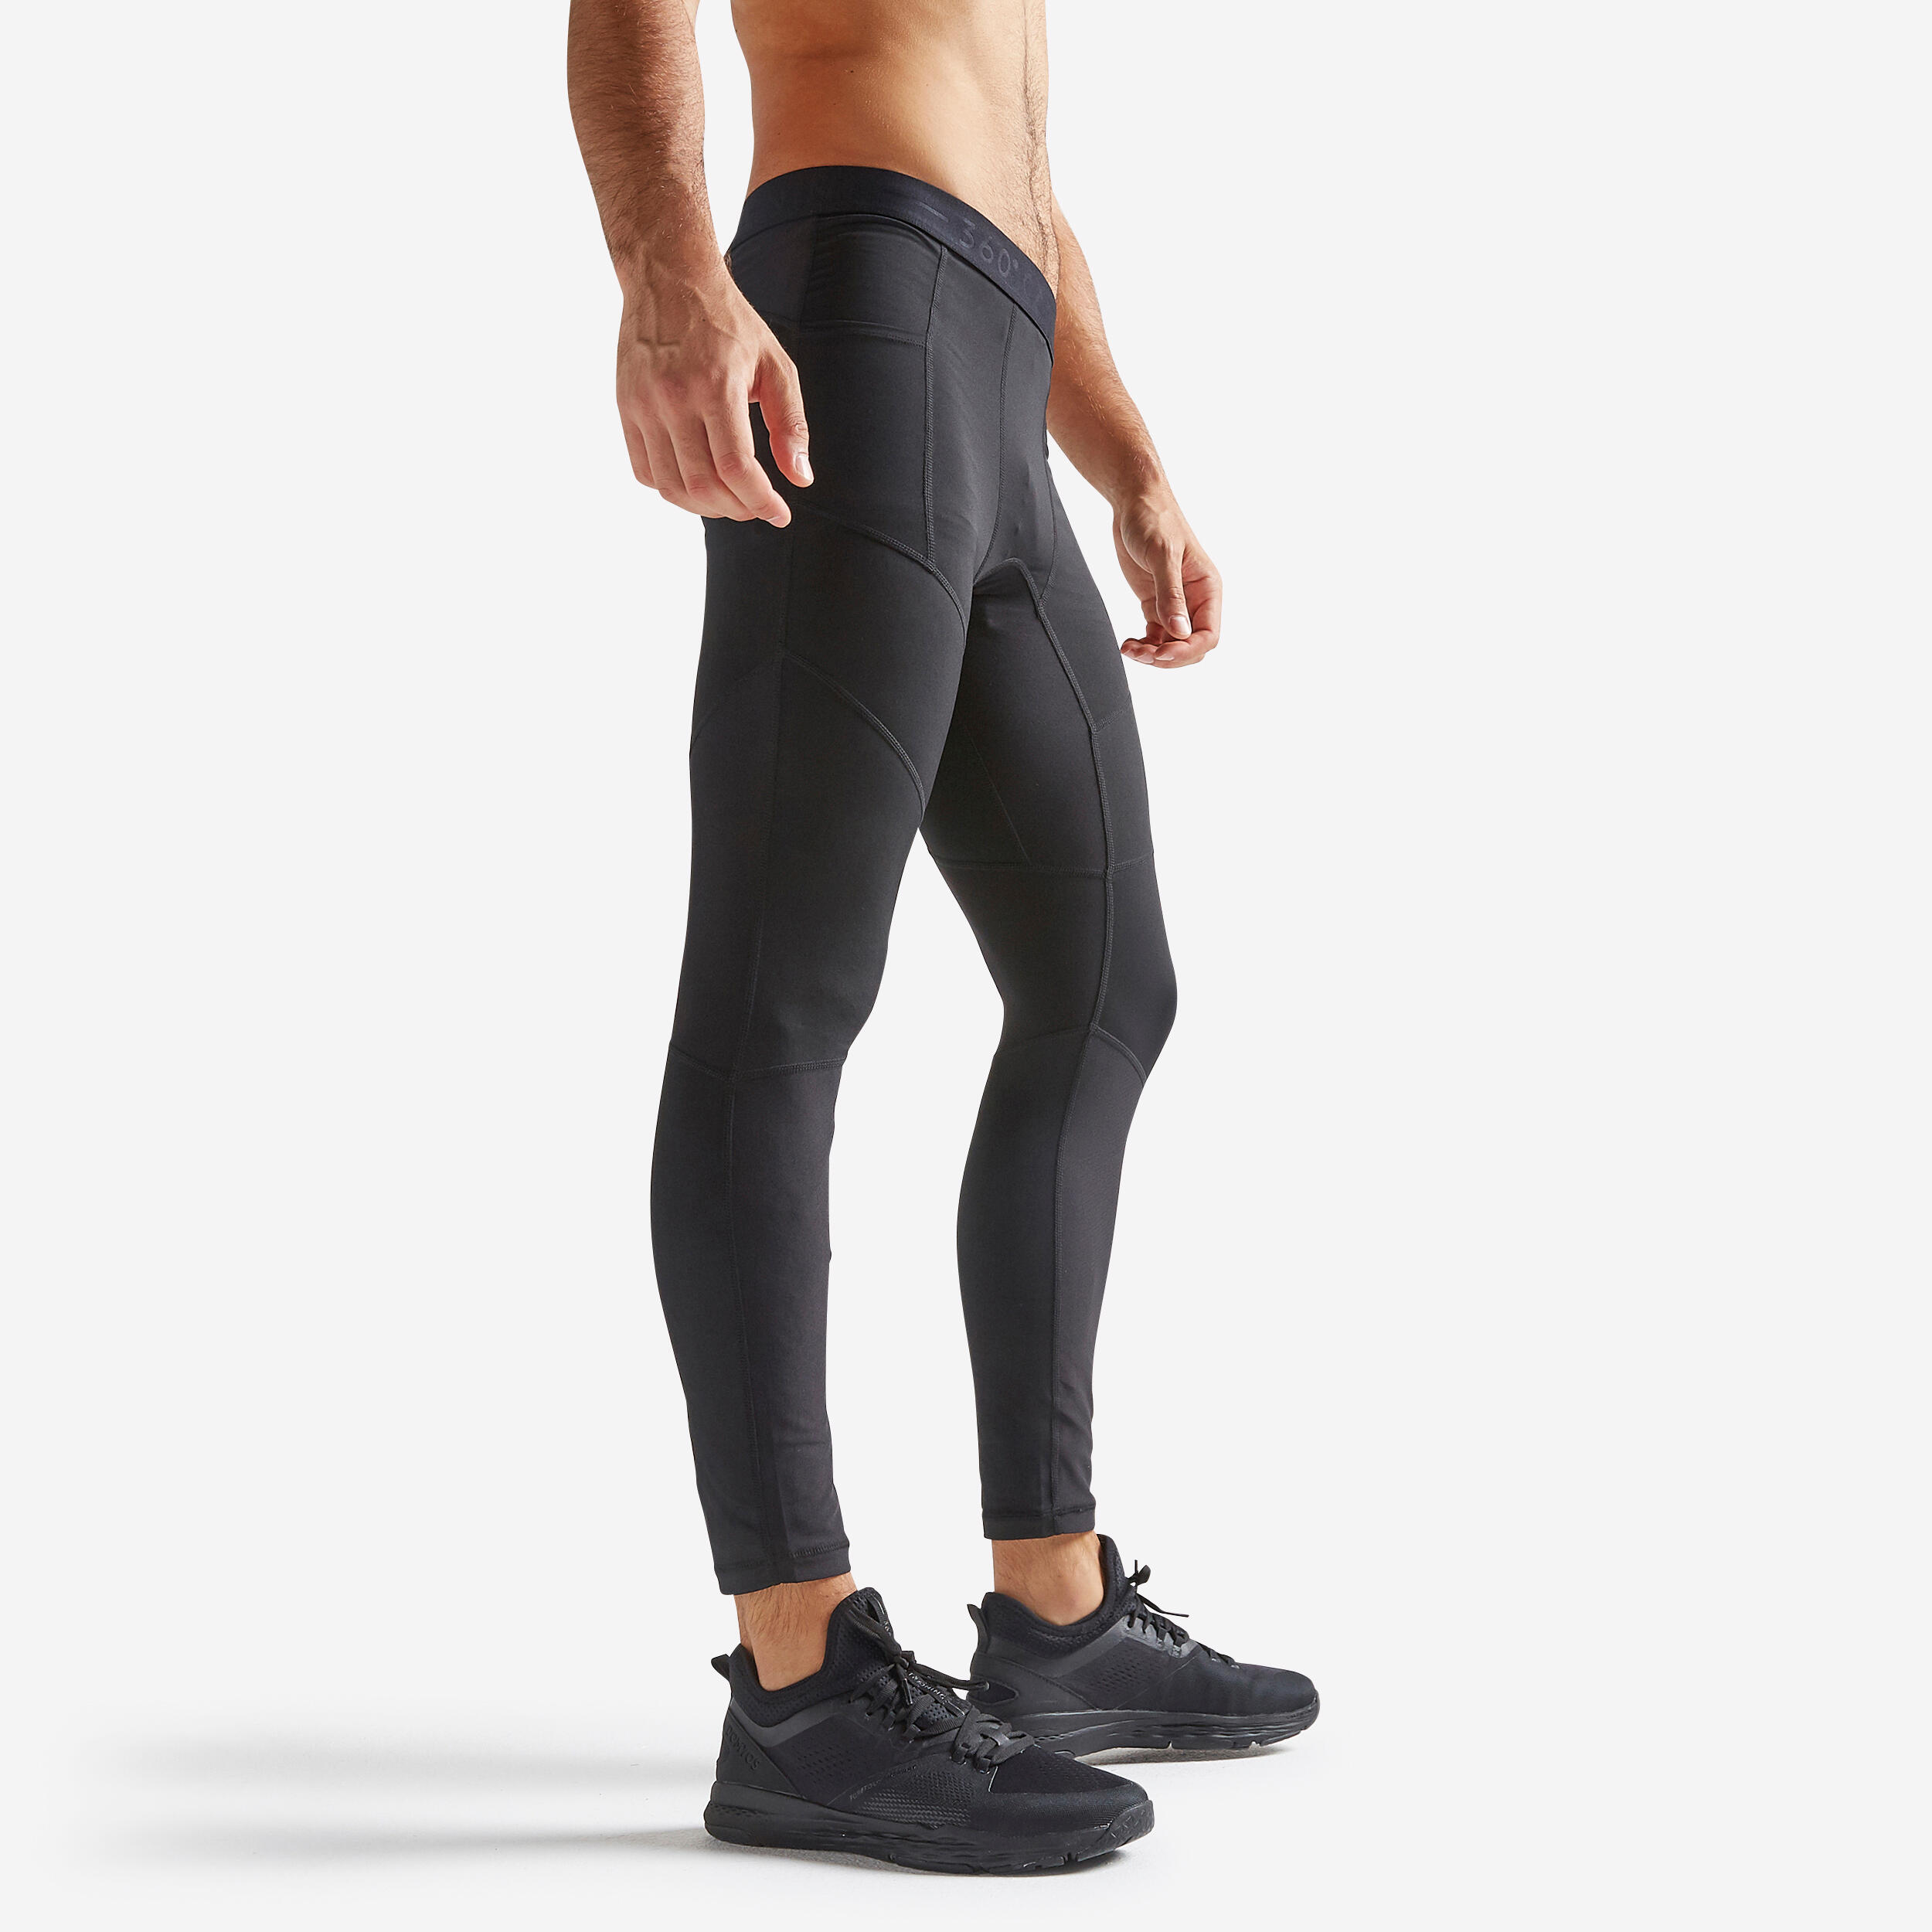 Men's Breathable Fitness Leggings - Black DOMYOS